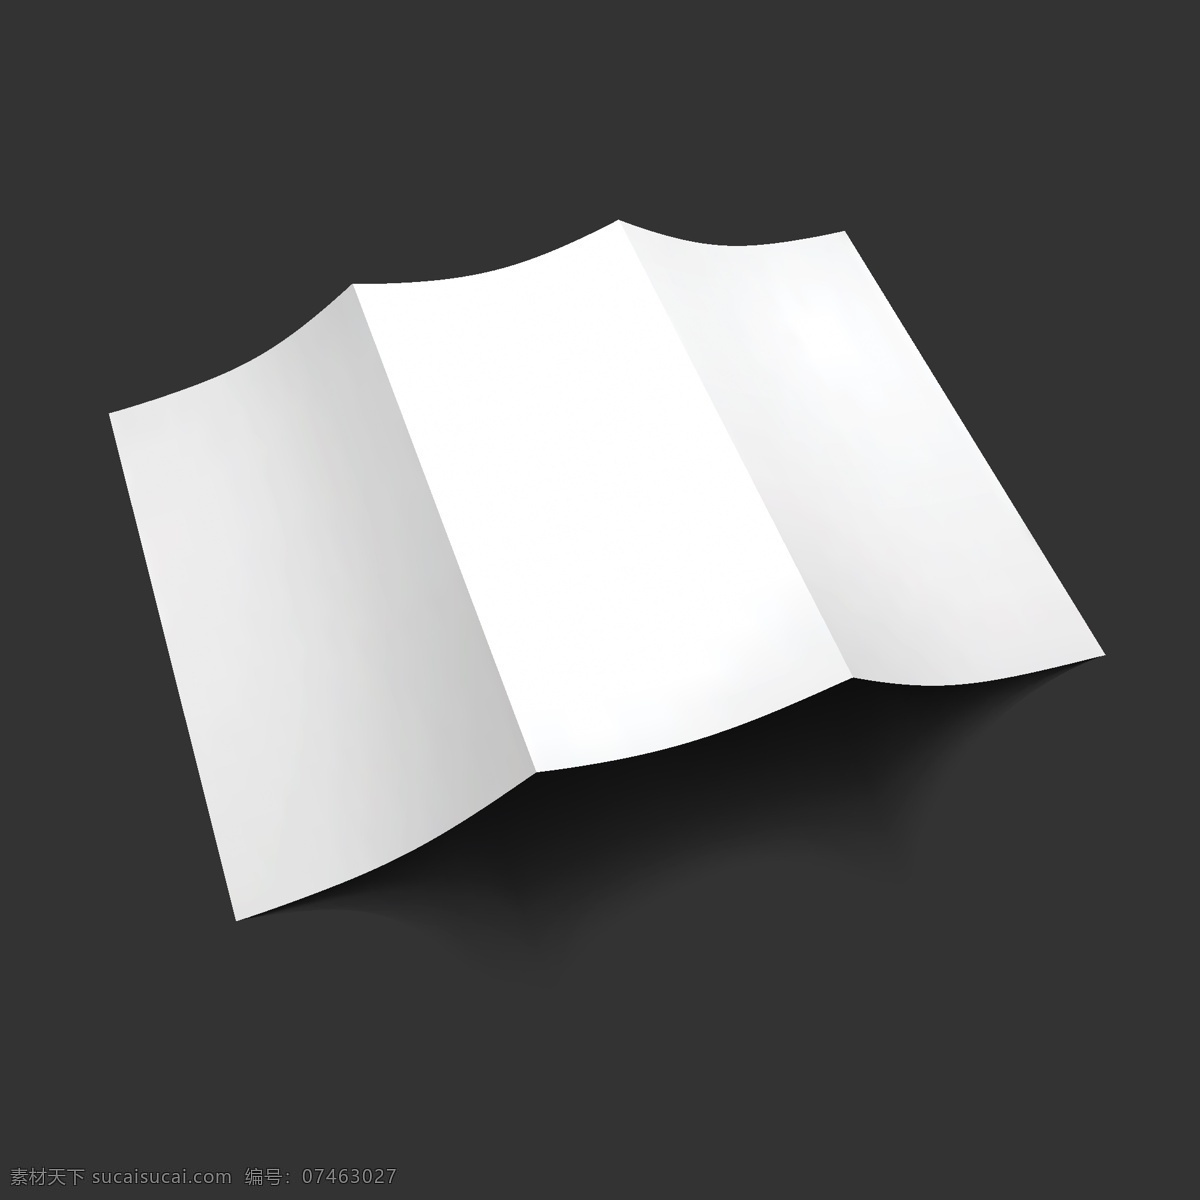 空白 广告 效果图 矢量 宣传折页设计 折页背景 空白折页模板 矢量图 其他矢量图